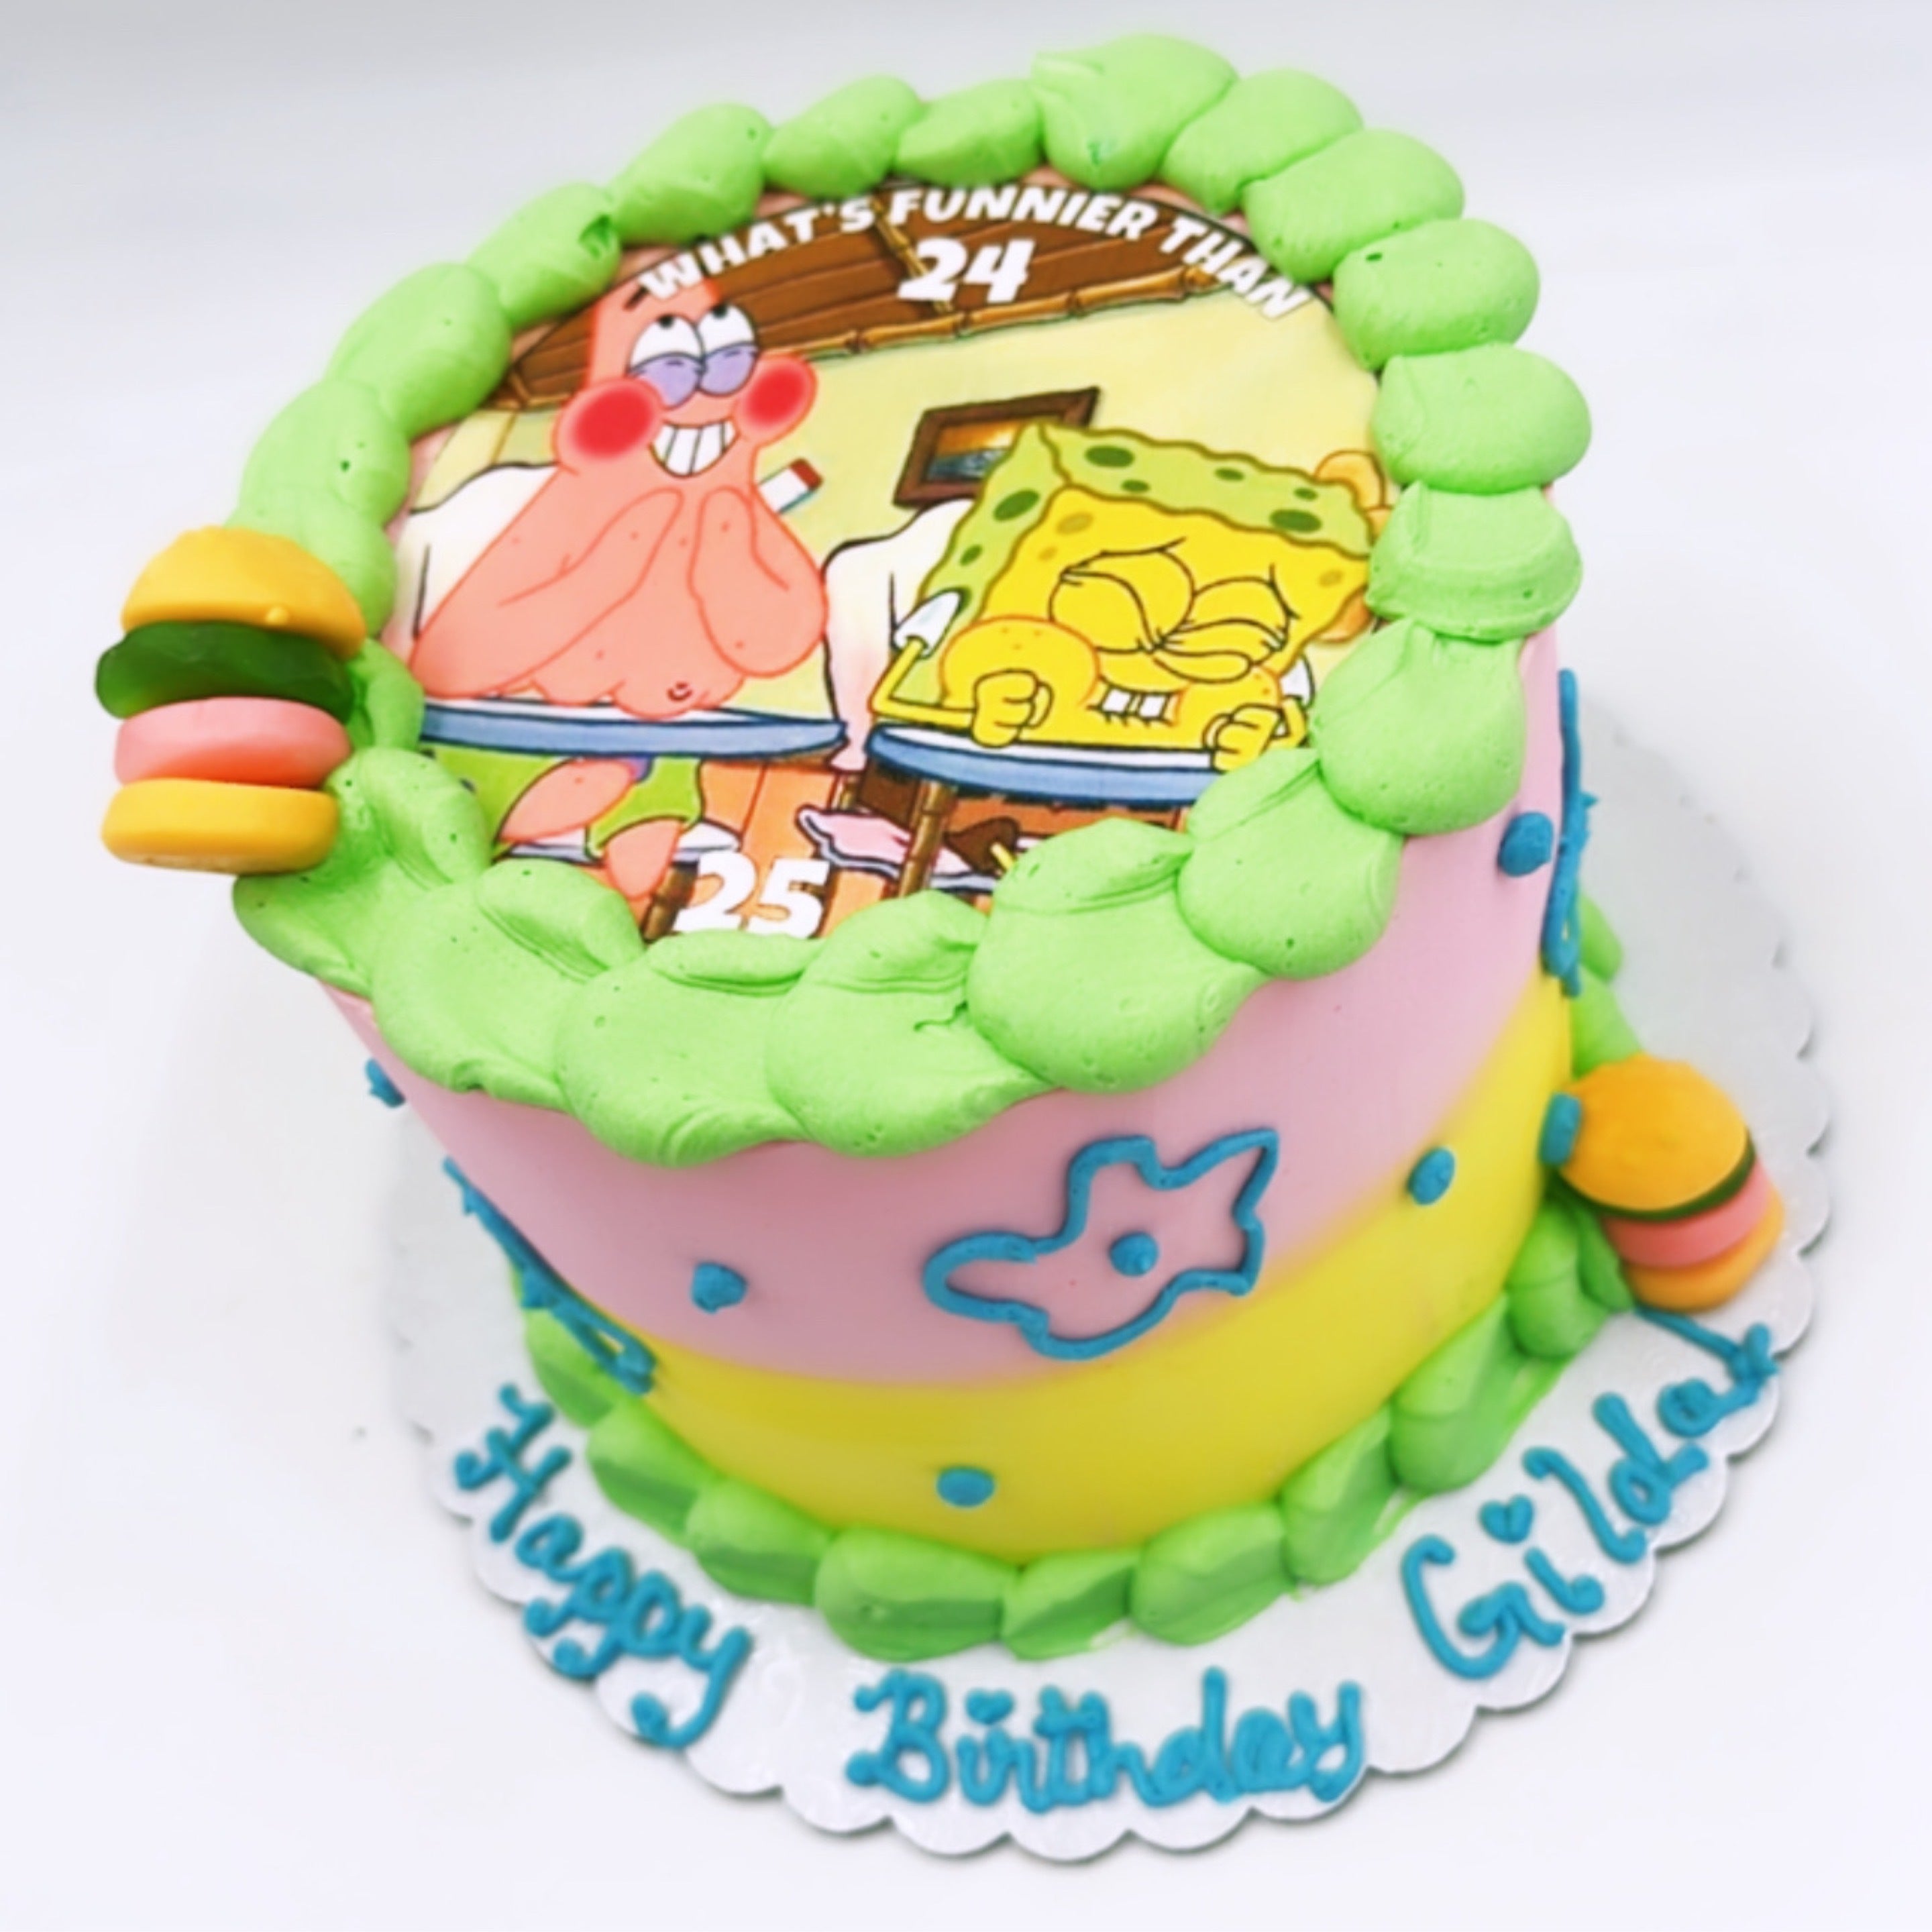 Bailey Cakes - You know what is funnier than 24....? 25! #cake  #birthdaycake #25 #spongebob #spongebobmemes #whatsfunnierthan24 #nova  #northernvirginia #occoquanva #occoquan | Facebook